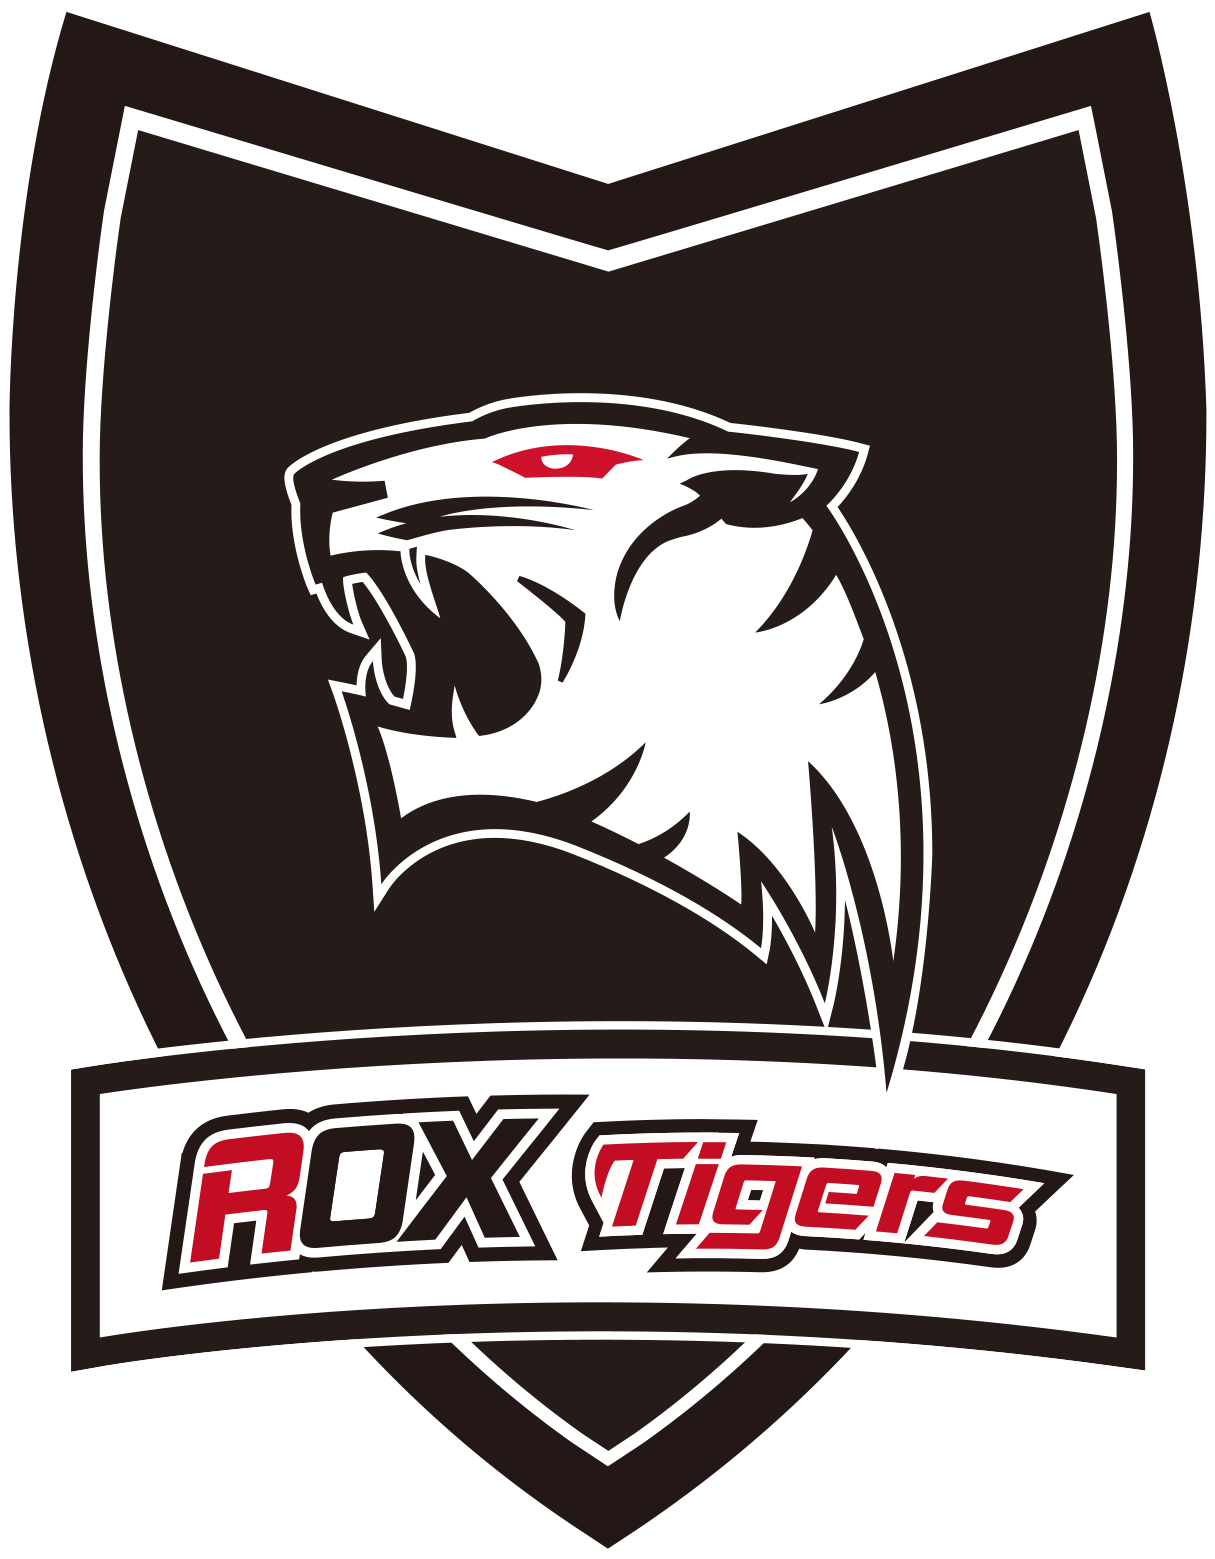 Rox Tigers Logo 2016-2016 - Rox Tigers 2016 Logo (1558x1558), Png Download